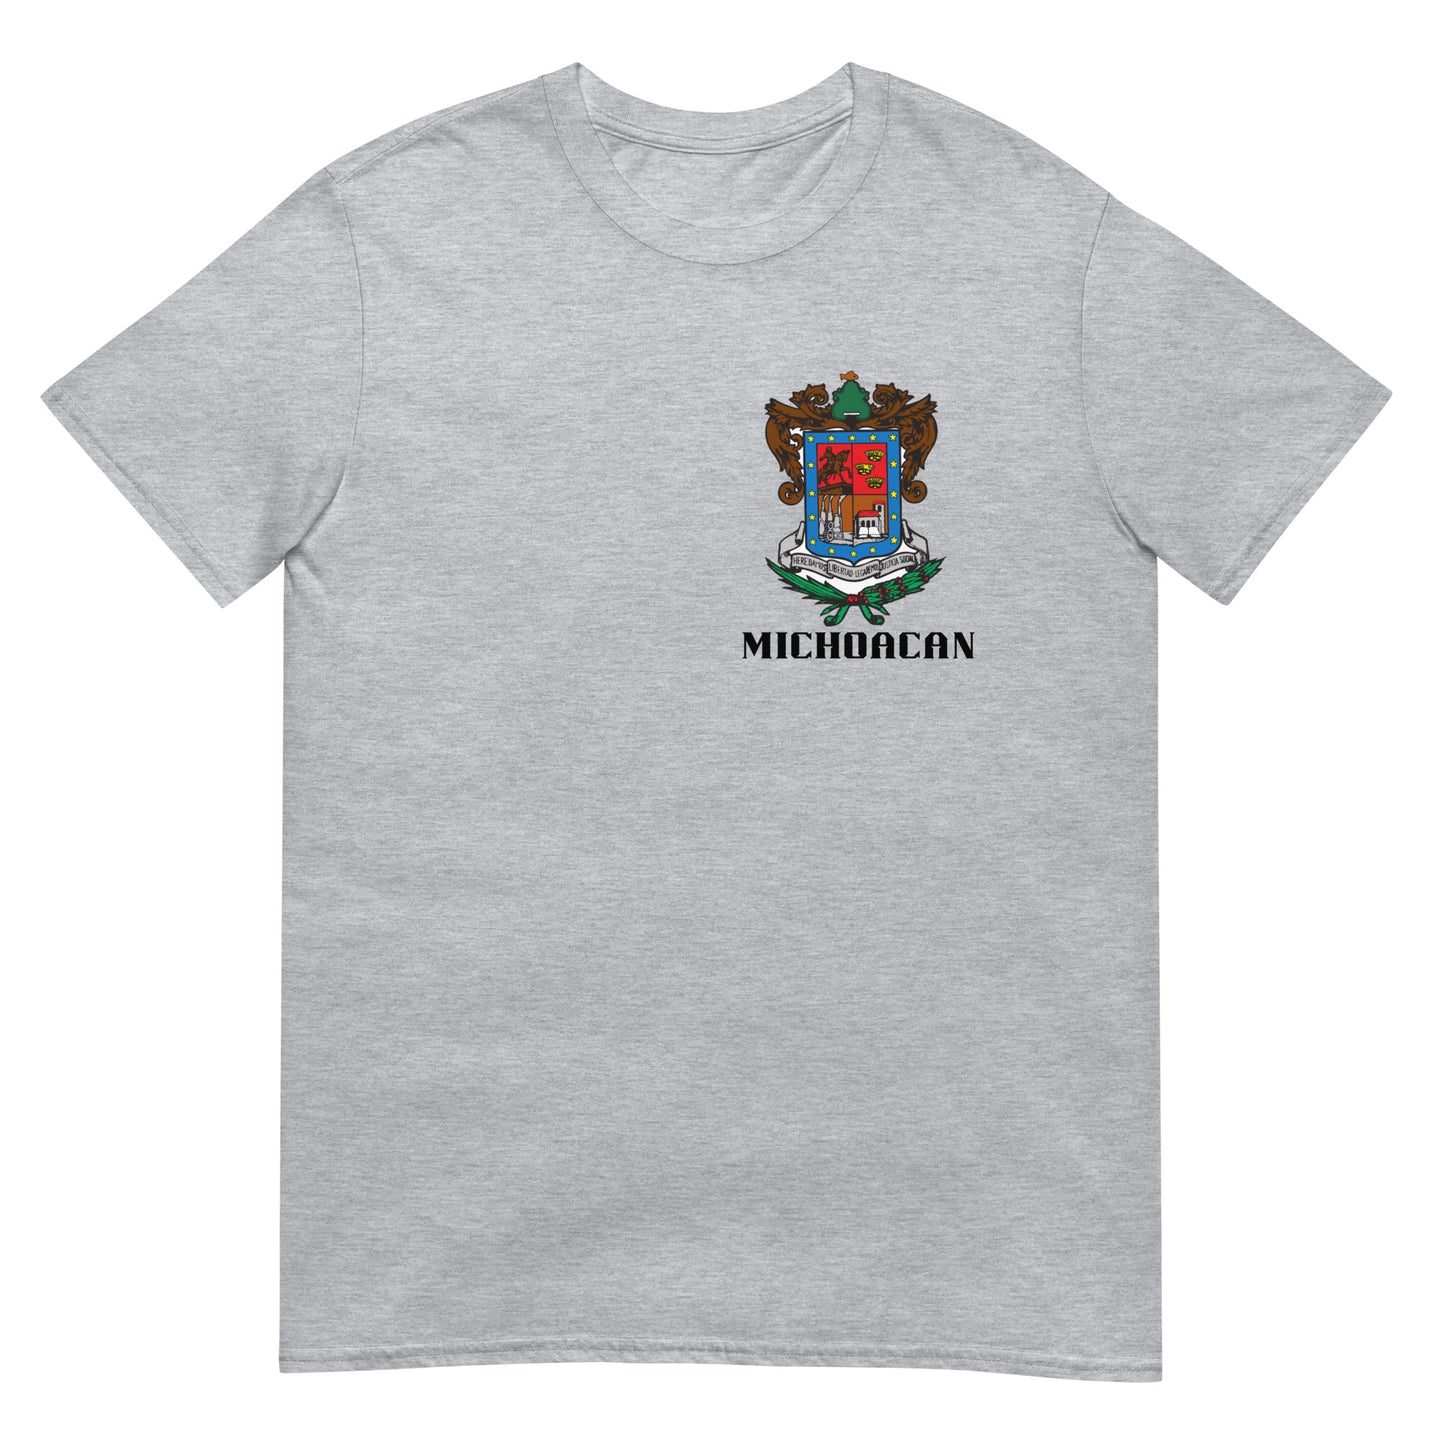 Michoacan- T-Shirt